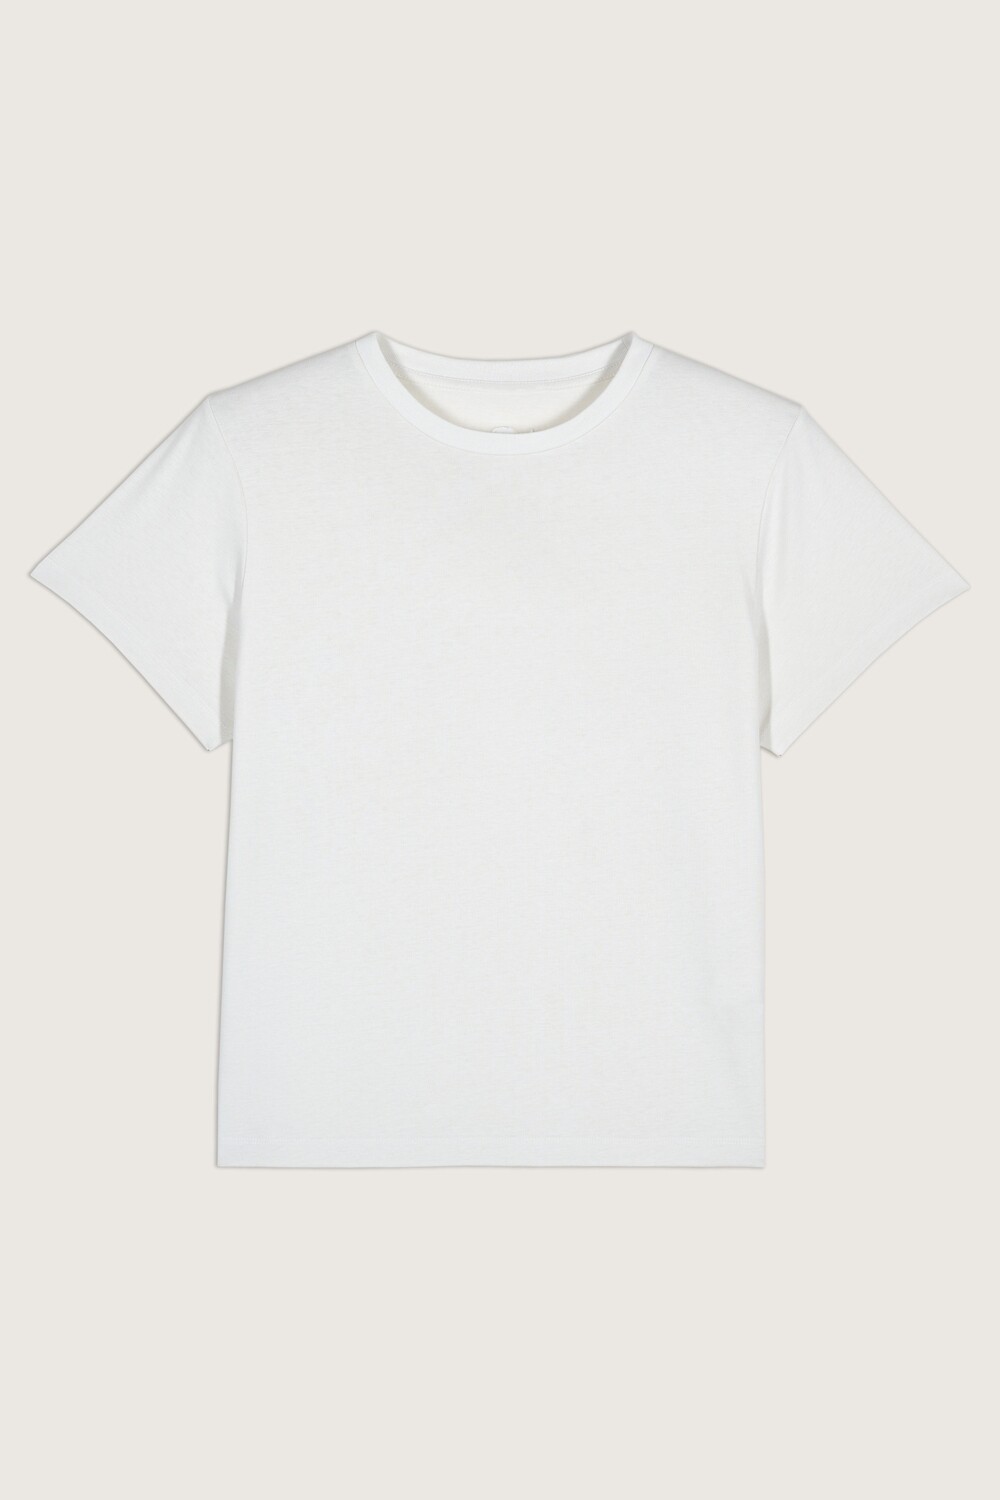 Ba&sh T-Shirt Iwen 1H23IWEN Blanc